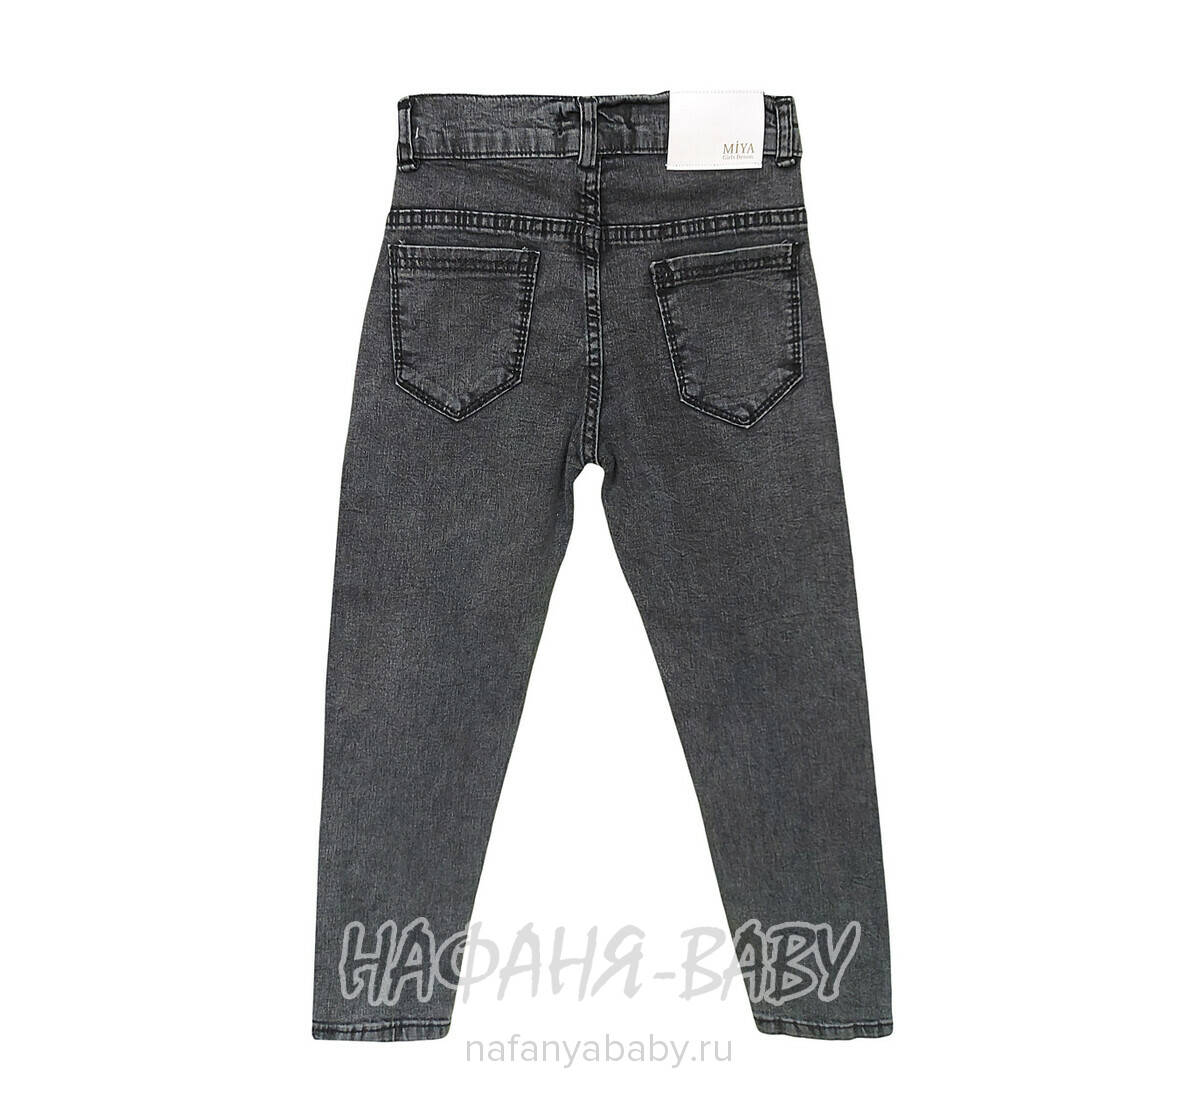 Подростковые джинсы MIYA арт: 8142 для девочки  11-15 лет, цвет черный, оптом Турция